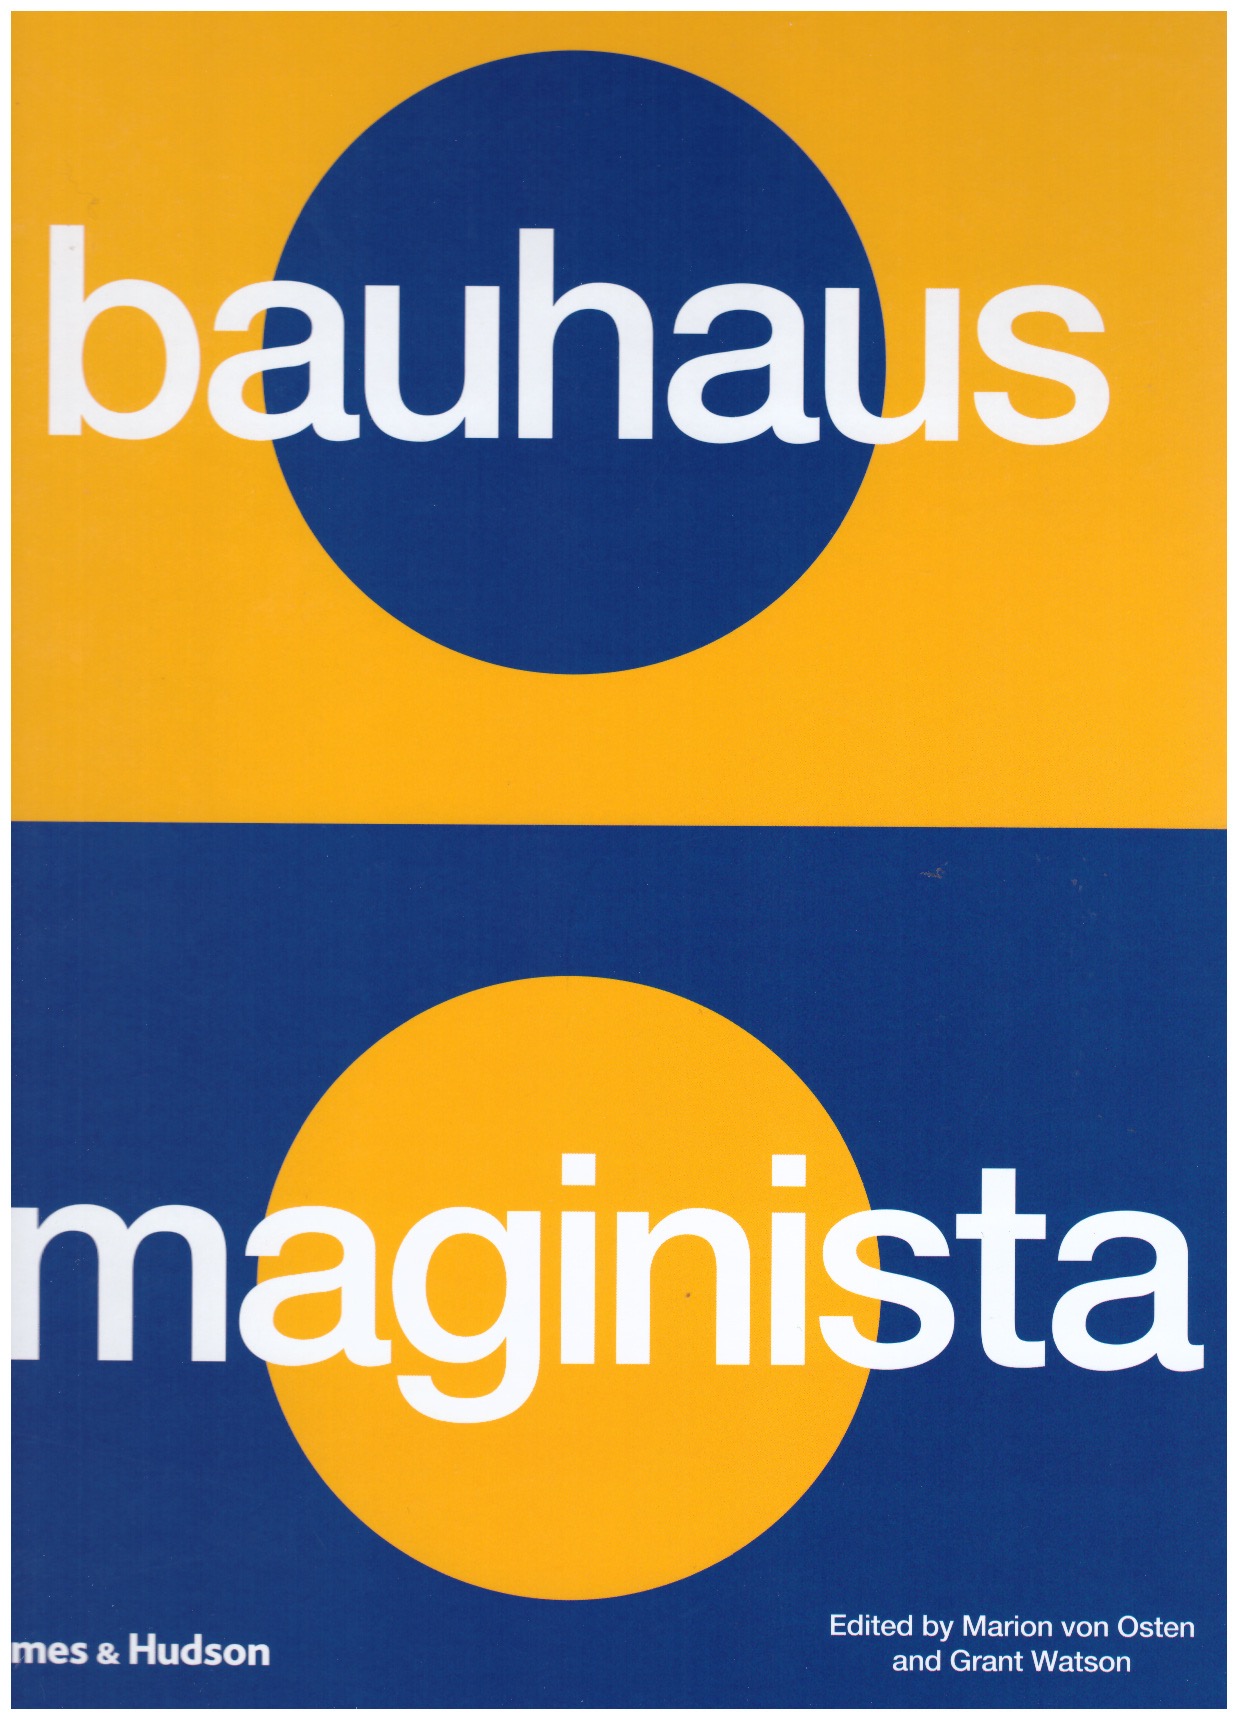 VON OSTEN, Marion; WATSON, Grant - Bauhaus Imaginista